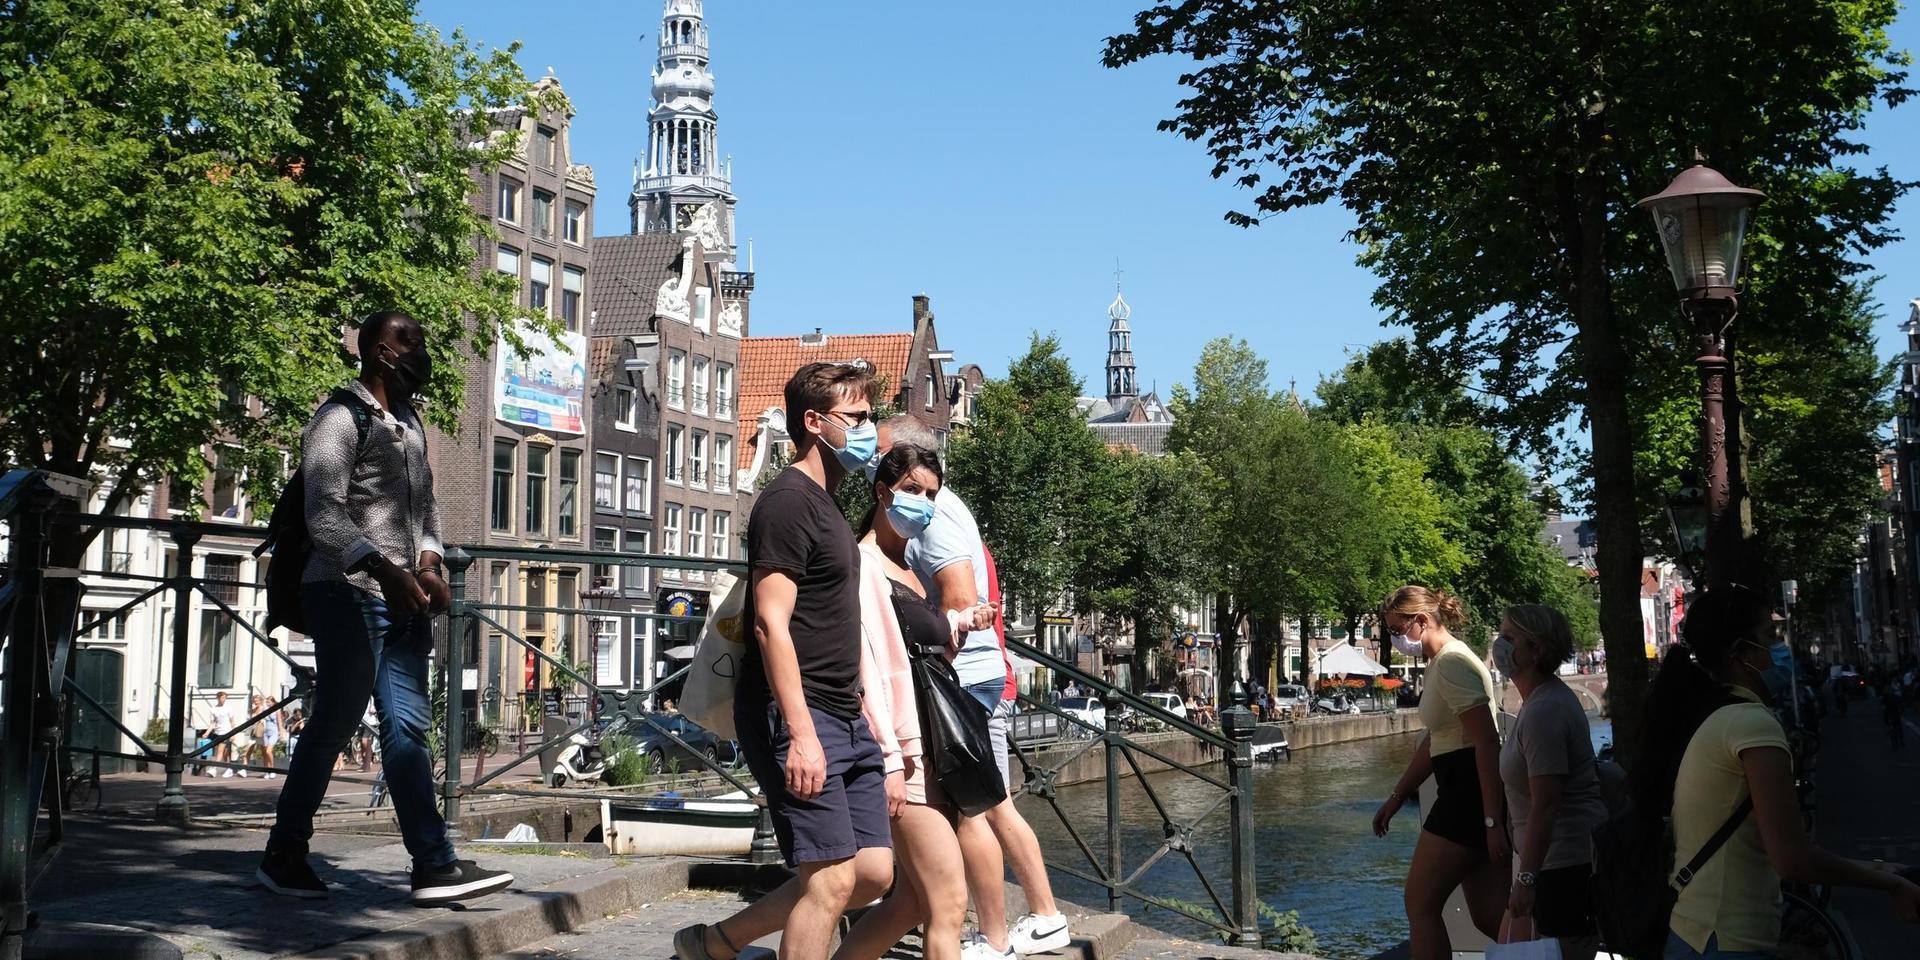 Människor promenerar över en bro i Nederländernas huvudstad Amsterdam, där krav på munskydd nyligen införts på vissa platser.